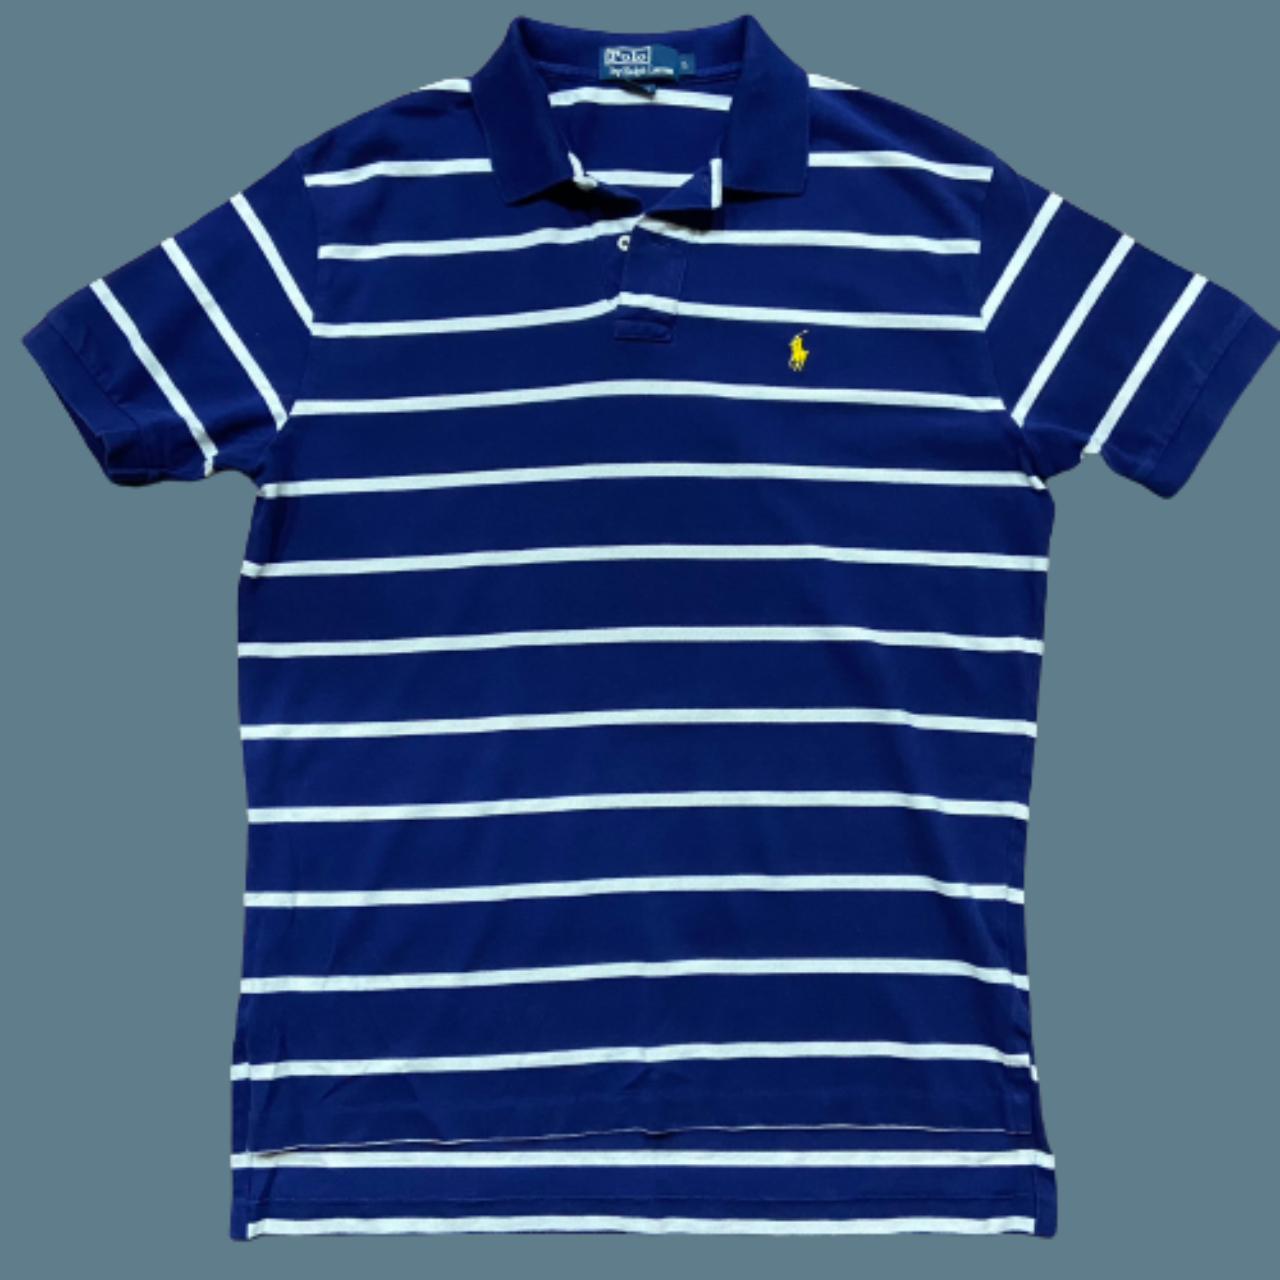 Polo Ralph Lauren Vintage 90s Striped Cotton Blue... - Depop